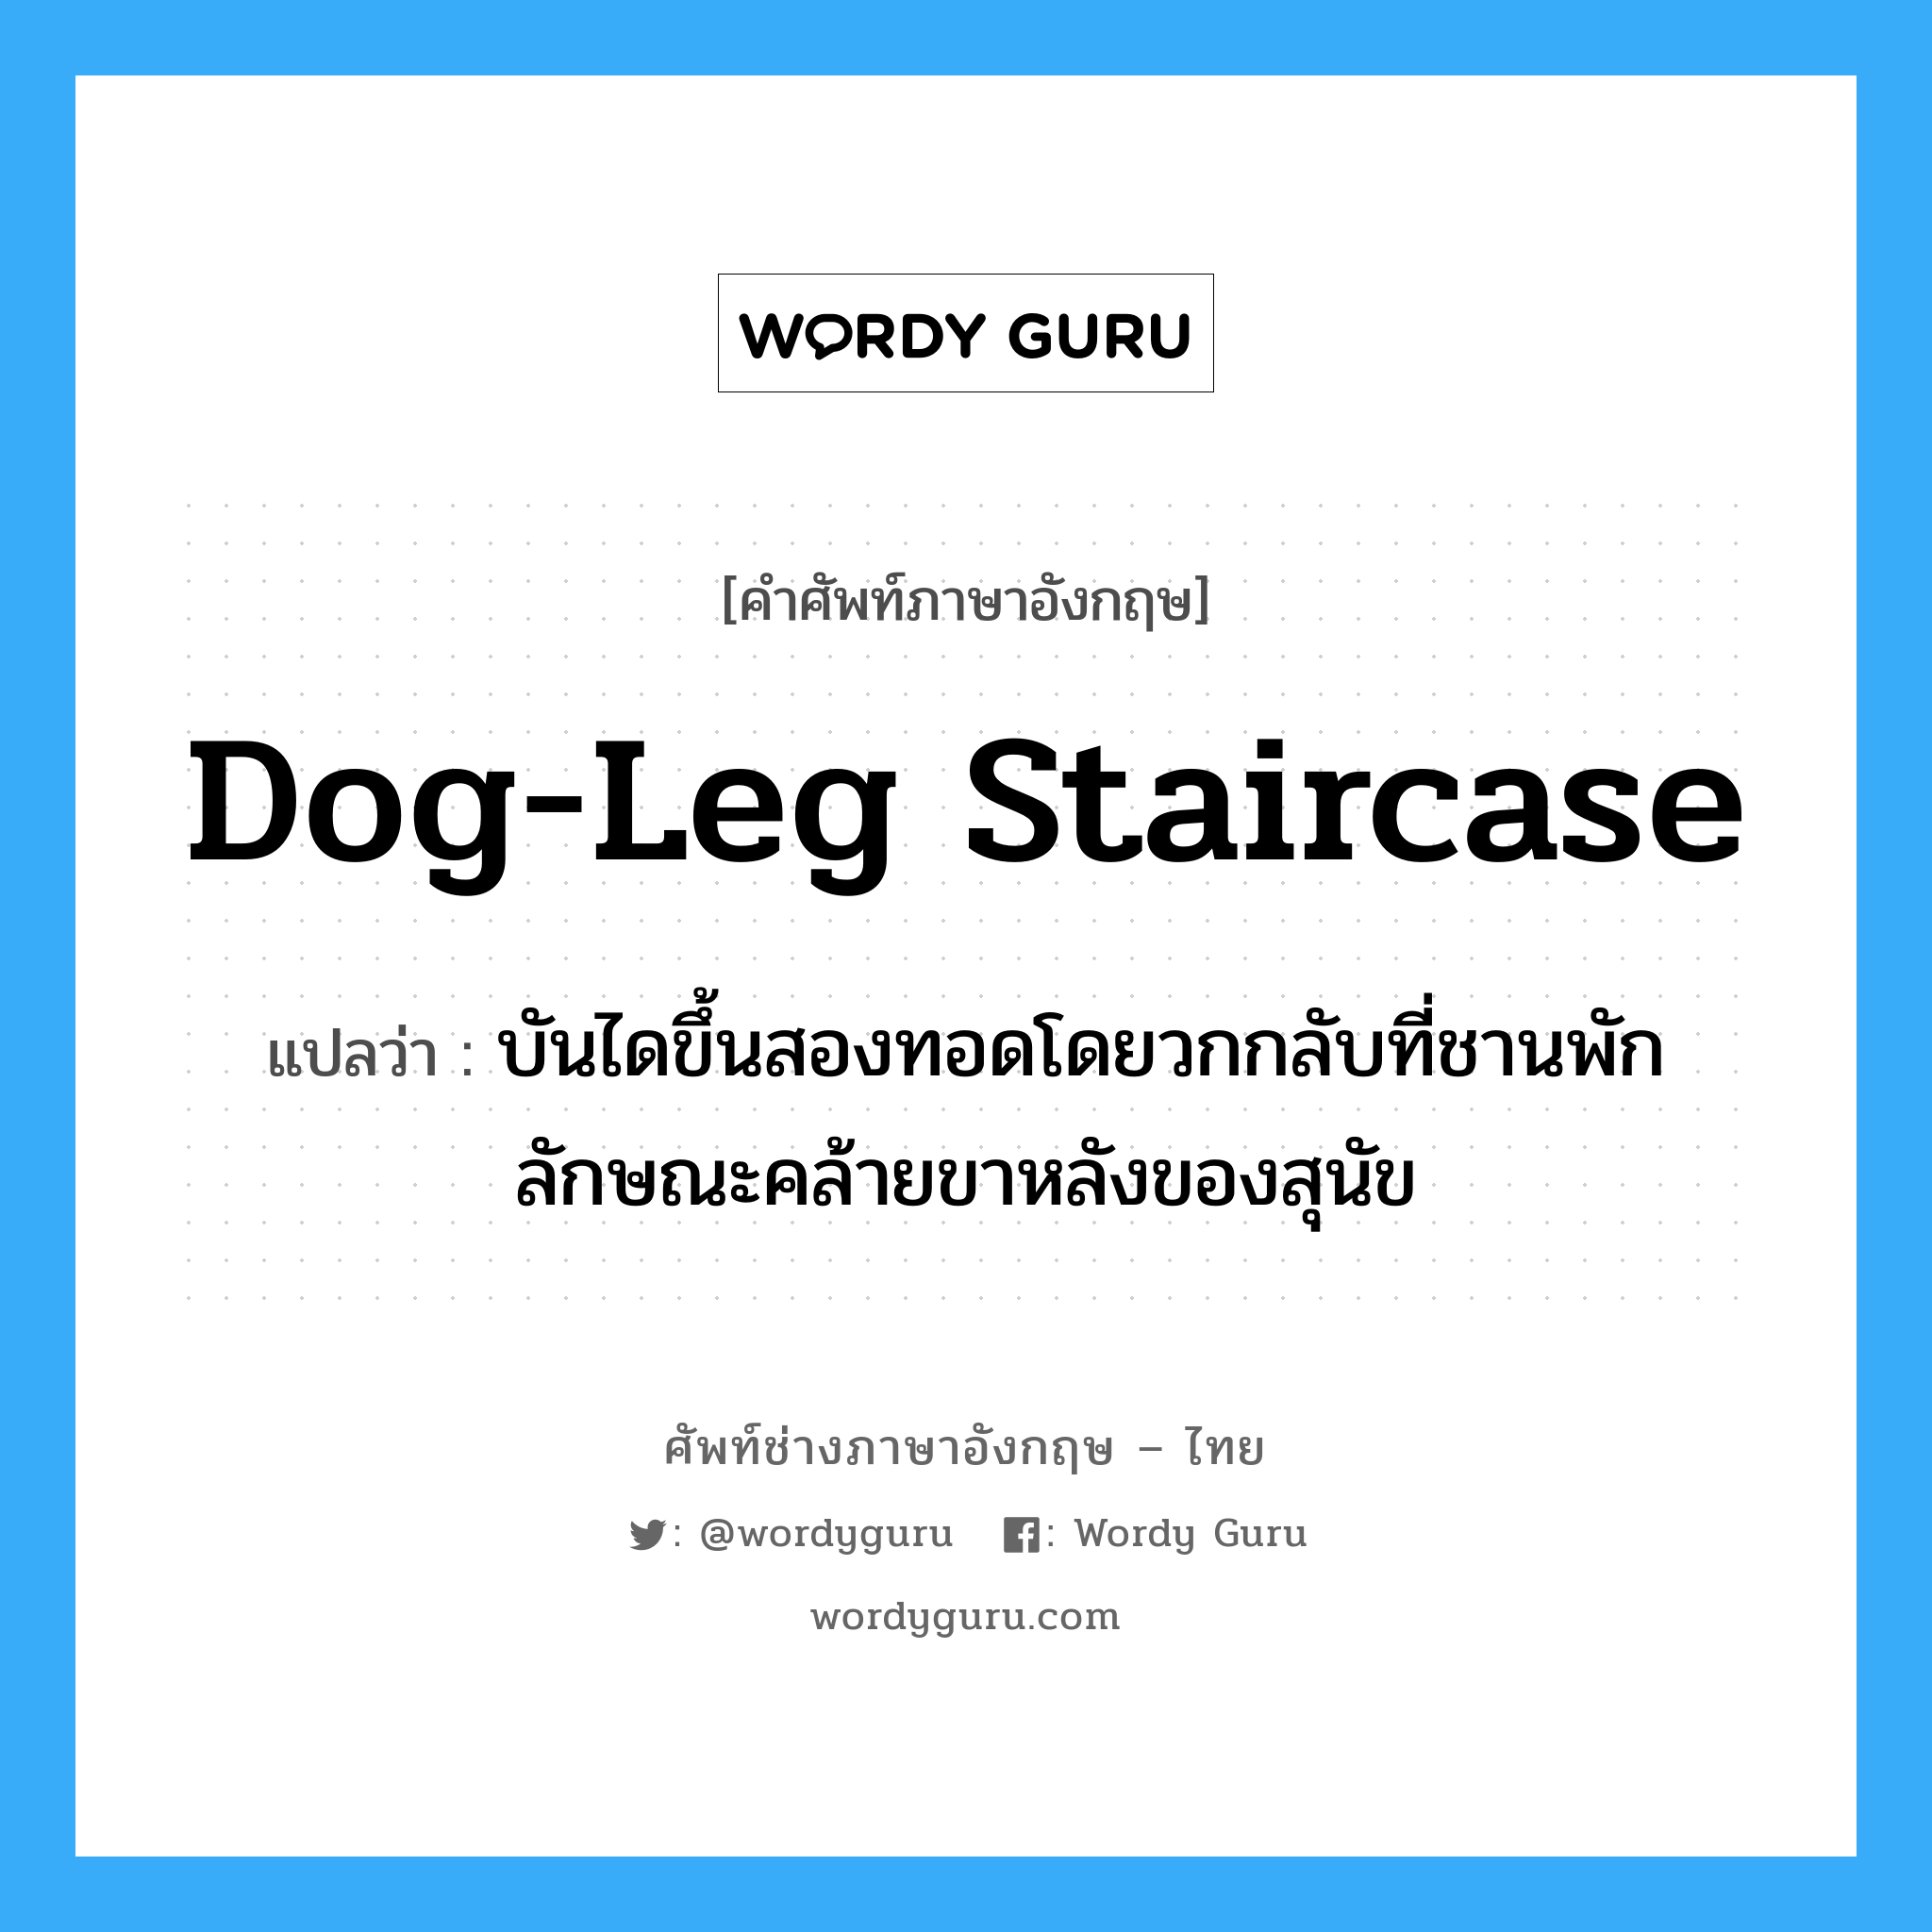 dog-leg staircase แปลว่า?, คำศัพท์ช่างภาษาอังกฤษ - ไทย dog-leg staircase คำศัพท์ภาษาอังกฤษ dog-leg staircase แปลว่า บันไดขึ้นสองทอดโดยวกกลับที่ชานพัก ลักษณะคล้ายขาหลังของสุนัข